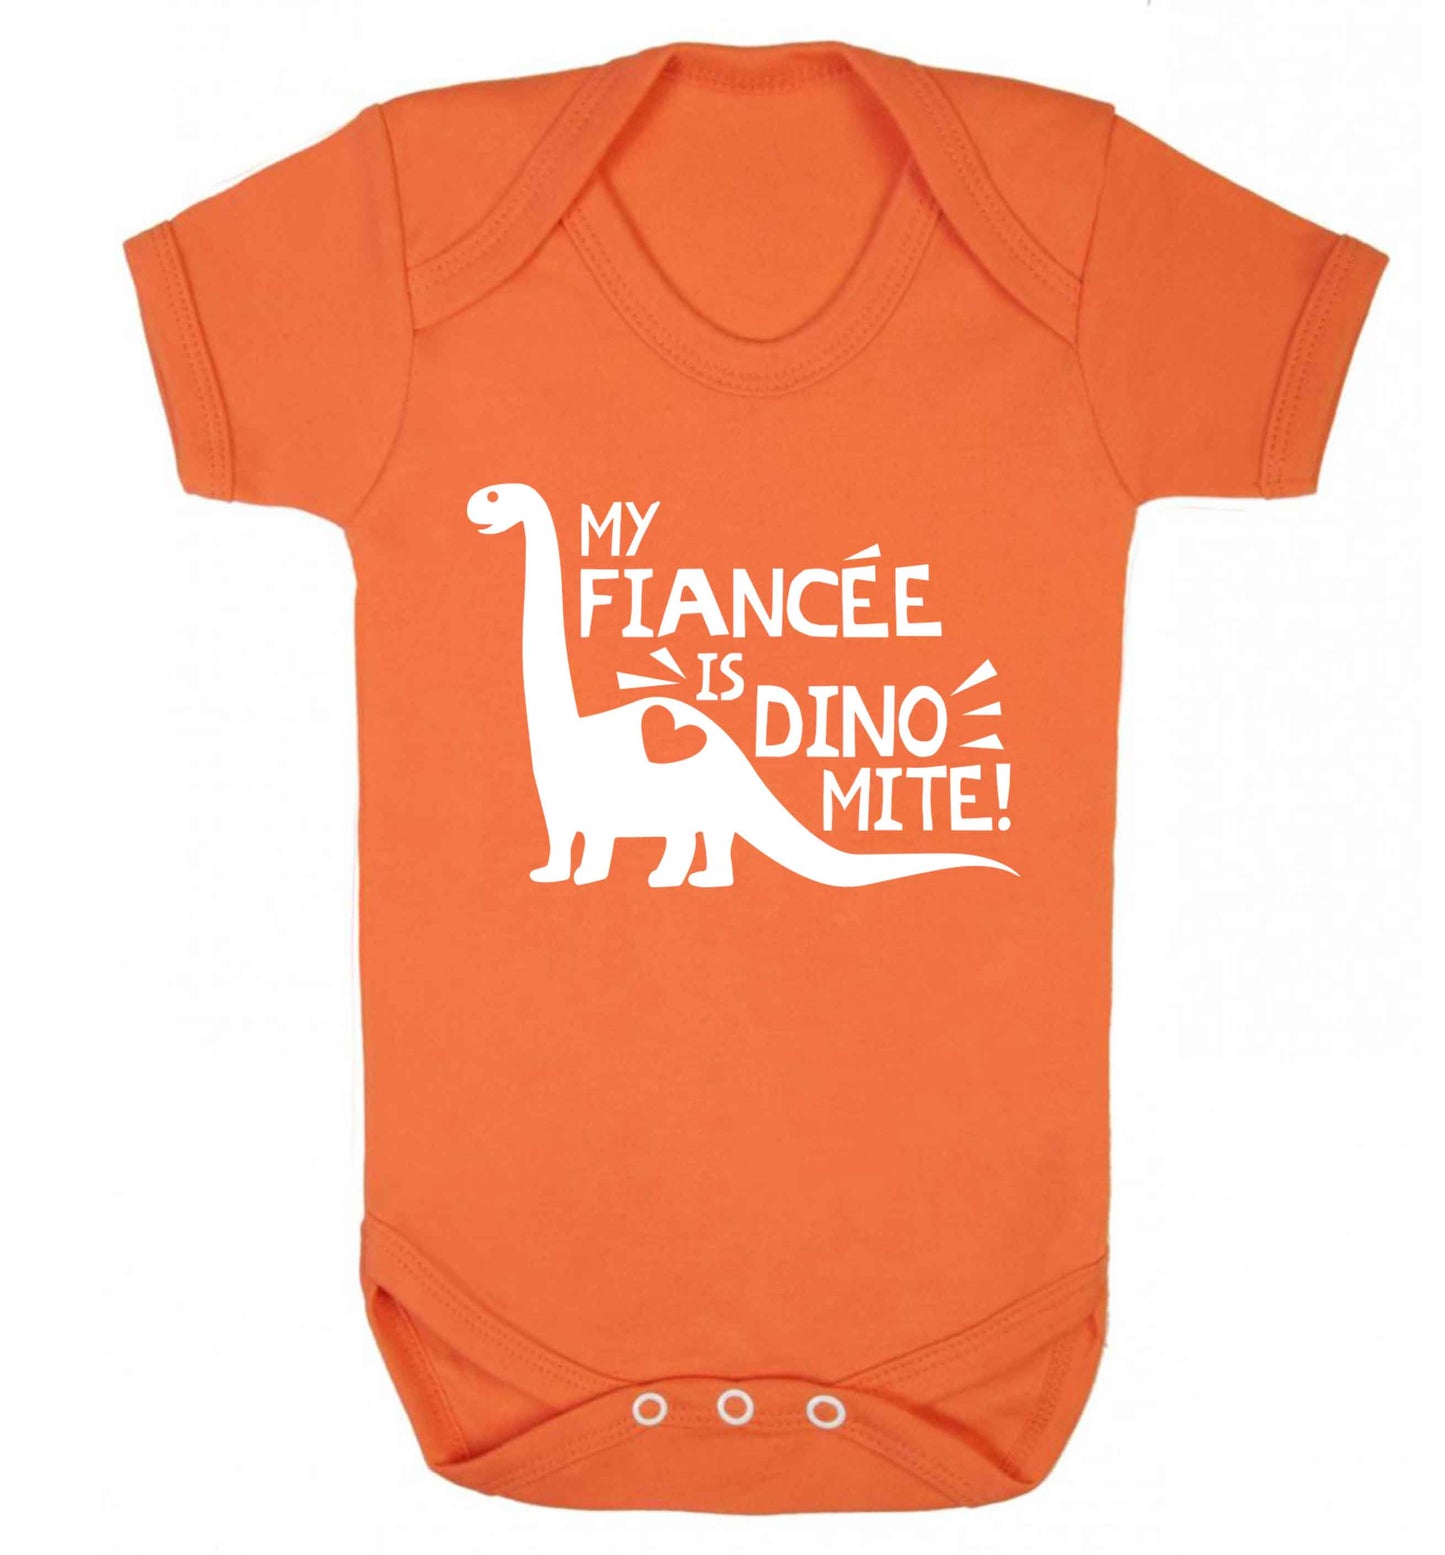 My fiancee is dinomite! Baby Vest orange 18-24 months